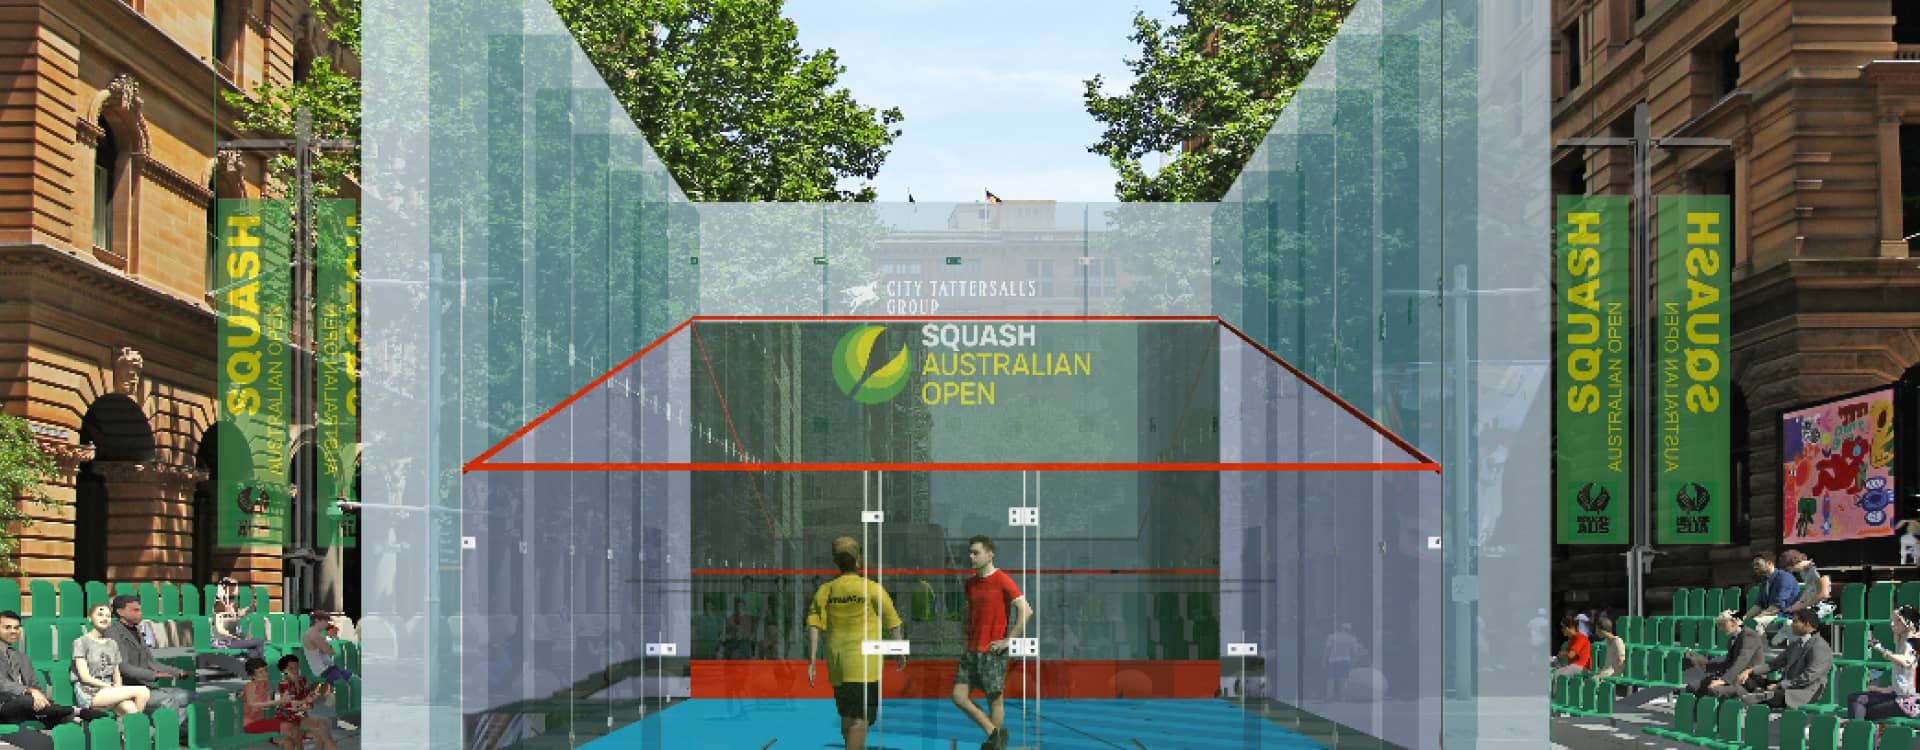 Squash Australia Open